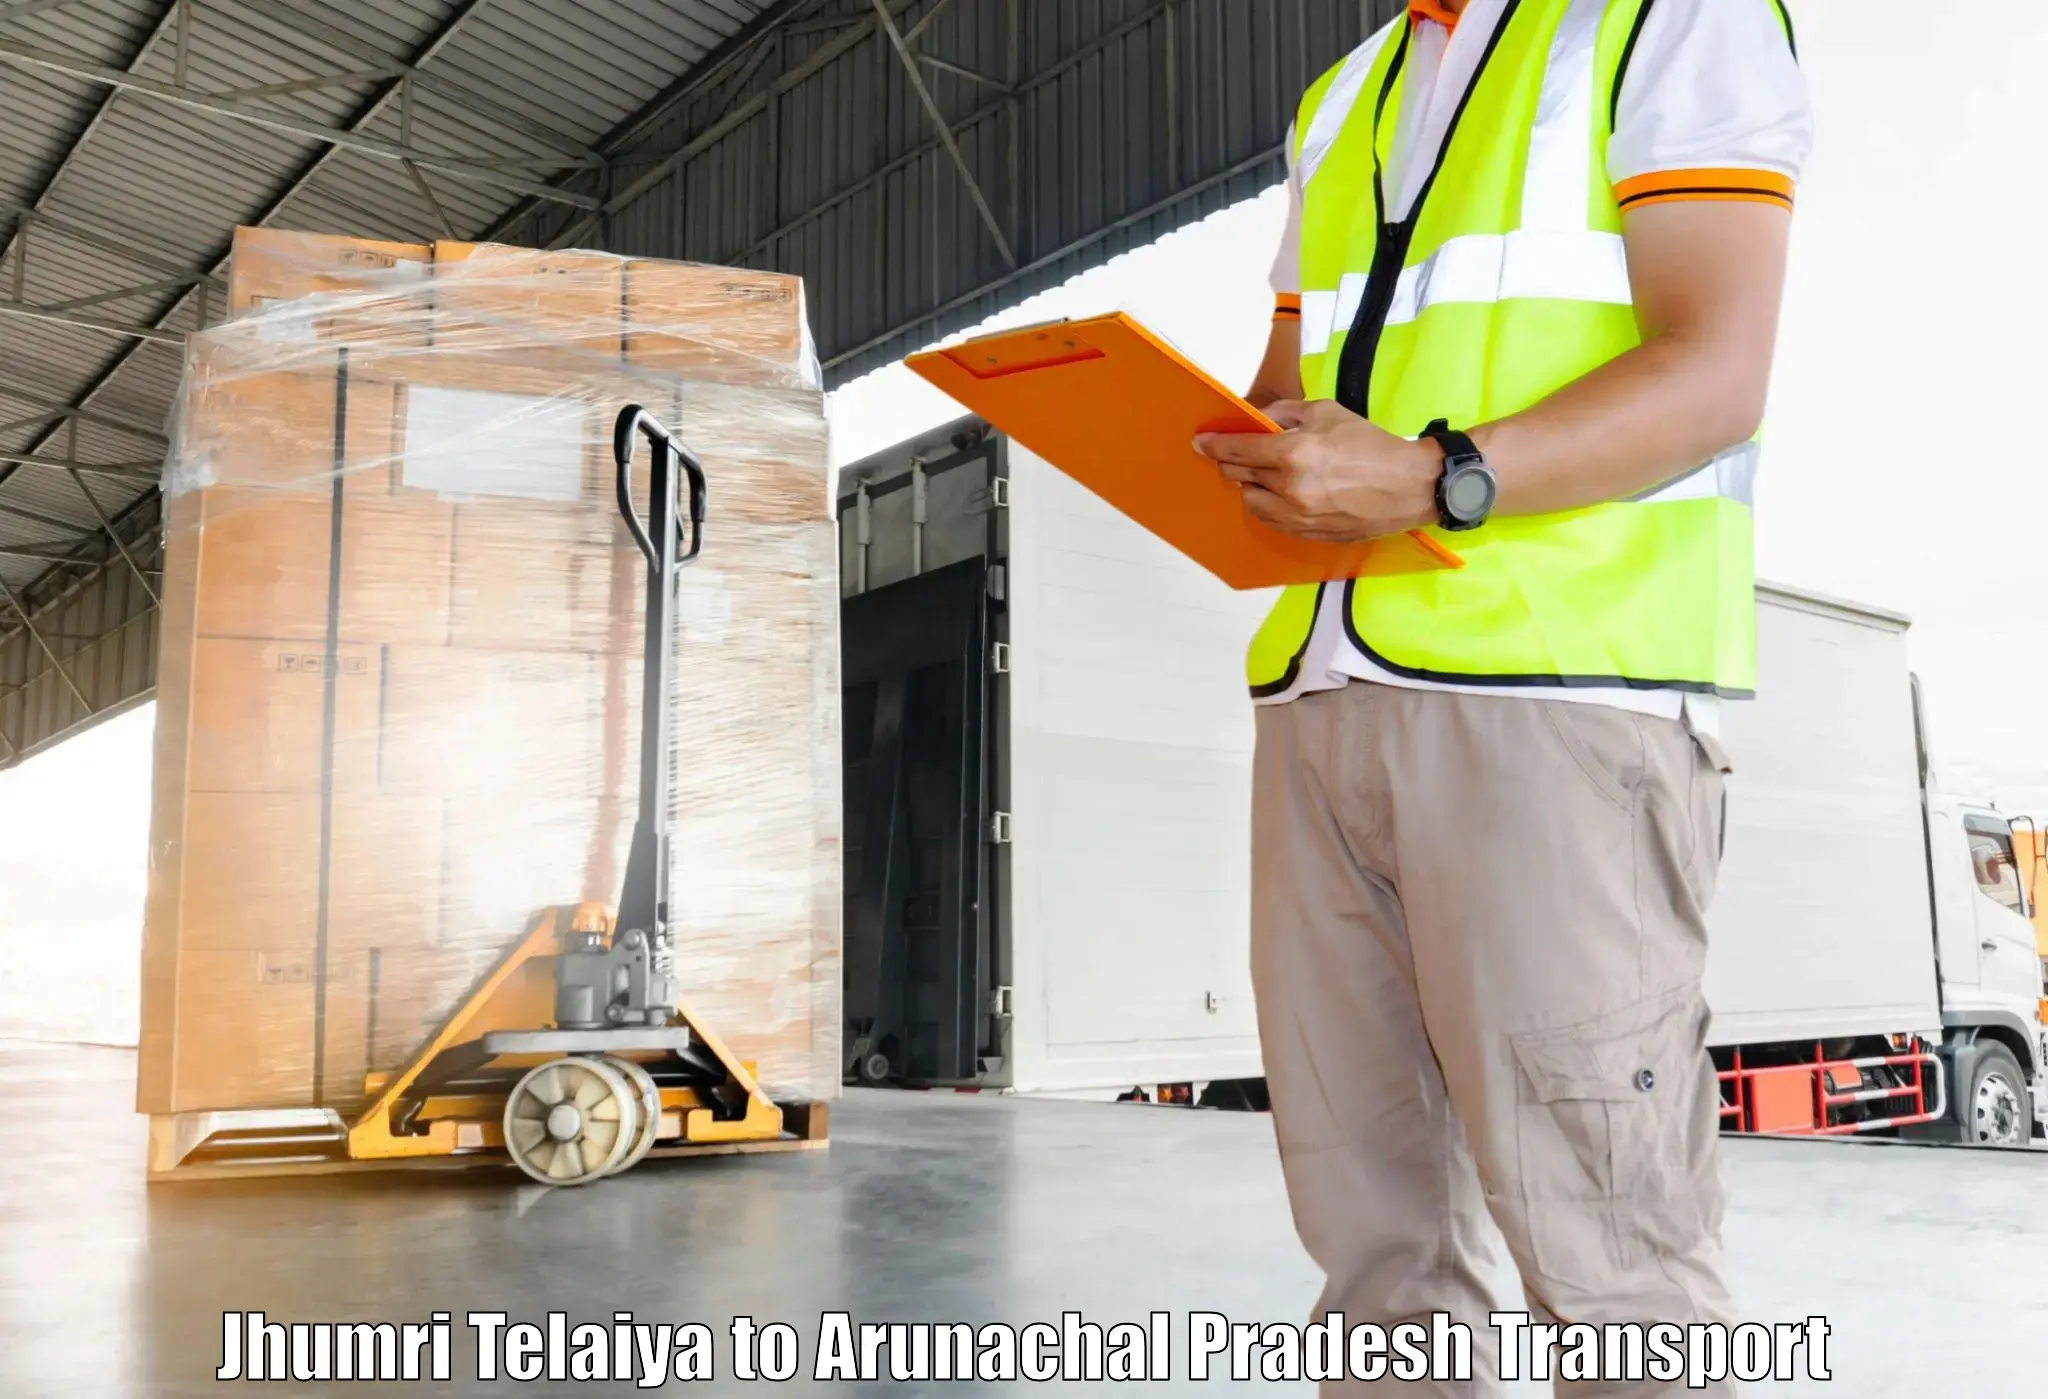 Shipping services Jhumri Telaiya to Tezu